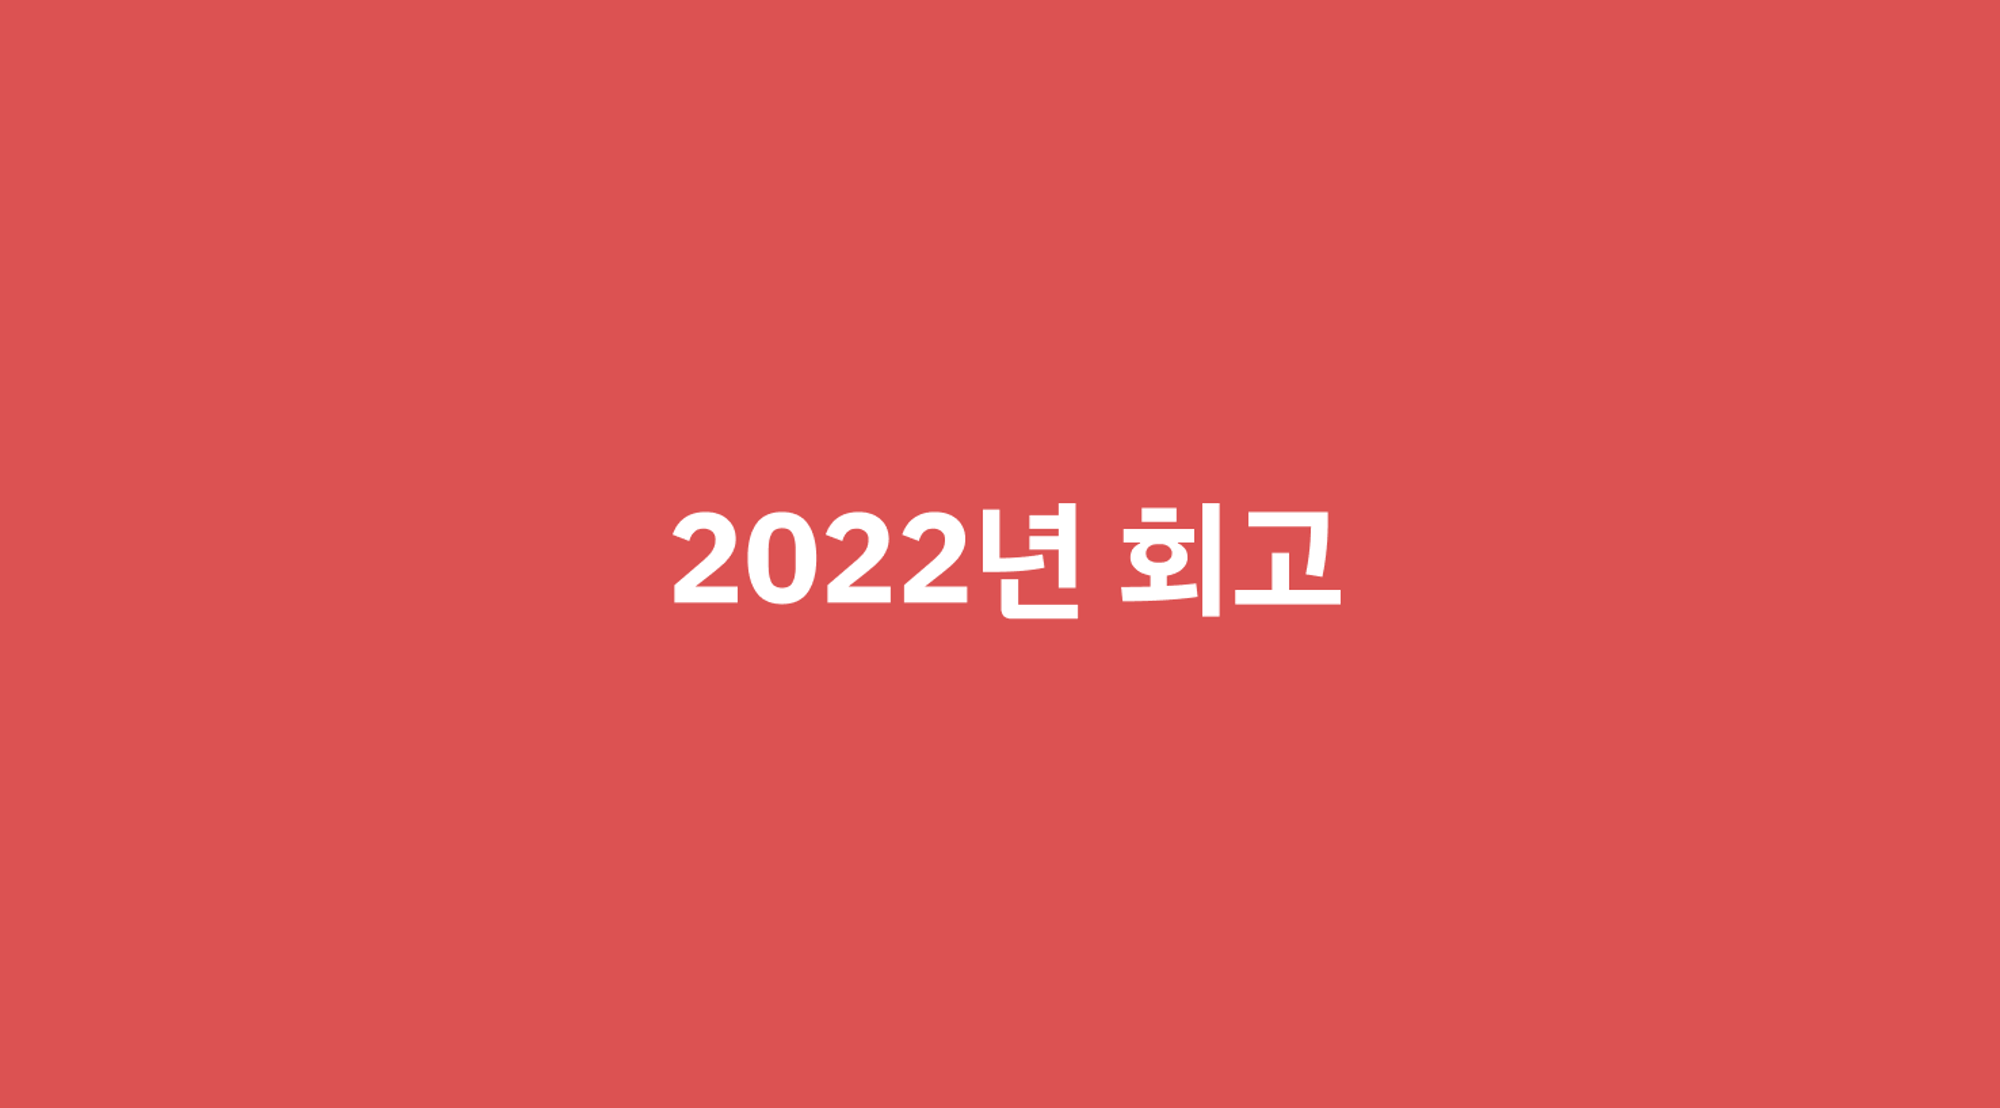 2022년 회고